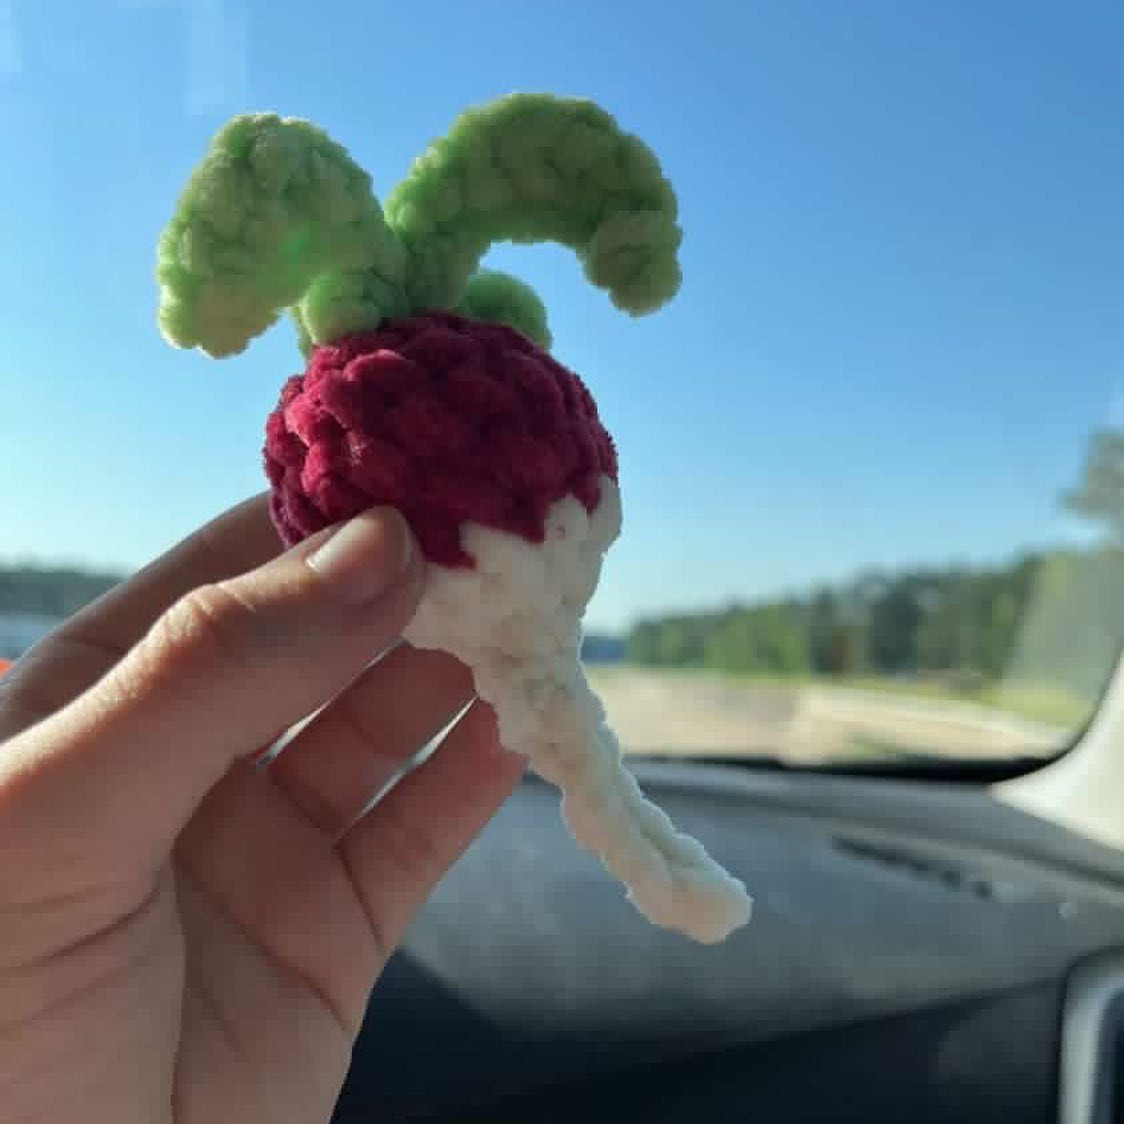 crochet mini turnip radish